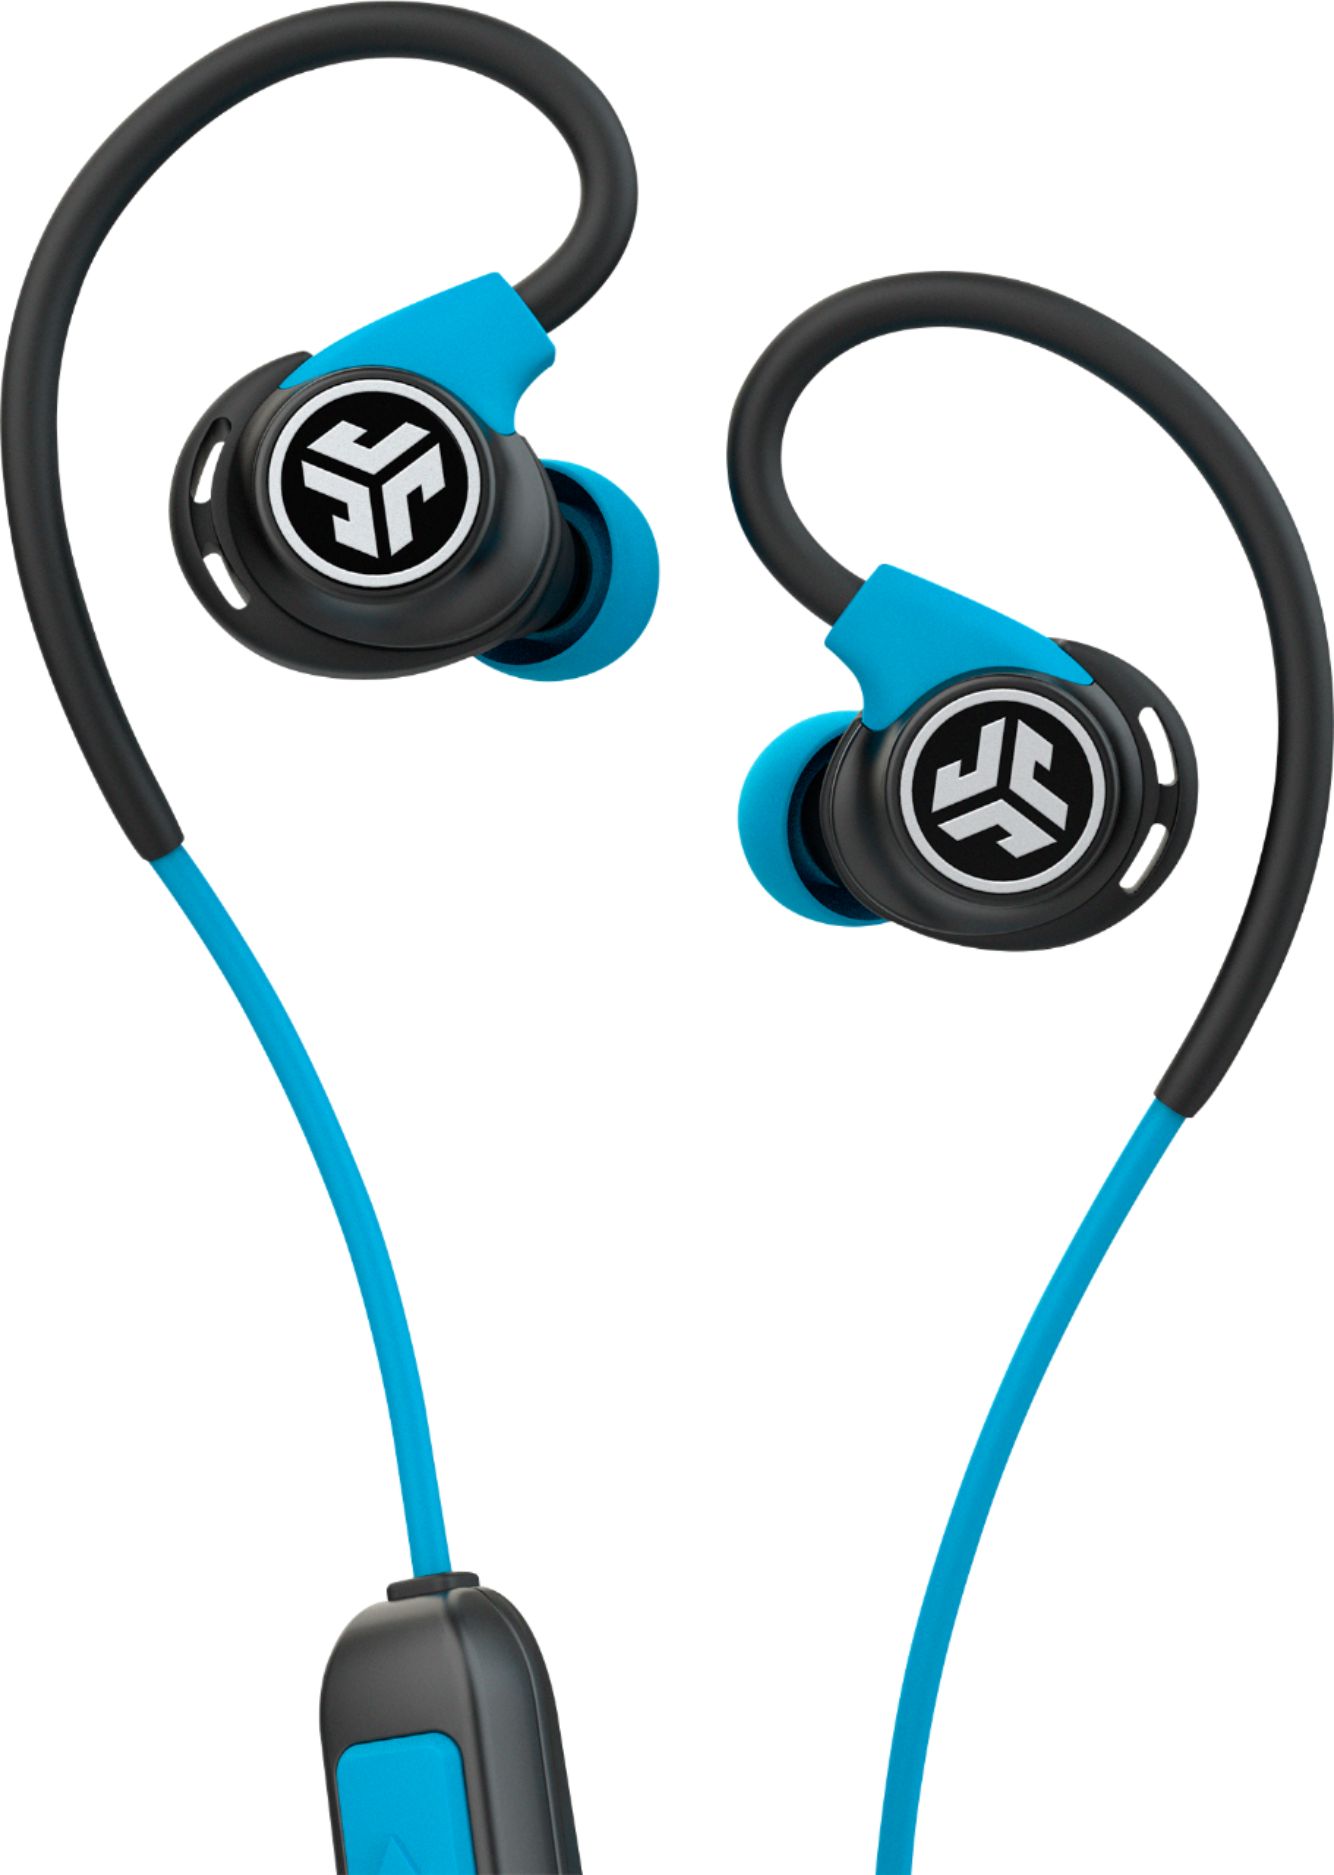 Jlab Audio Fit Sport Fitness Earbuds Wireless In Ear Headphones Black Blue